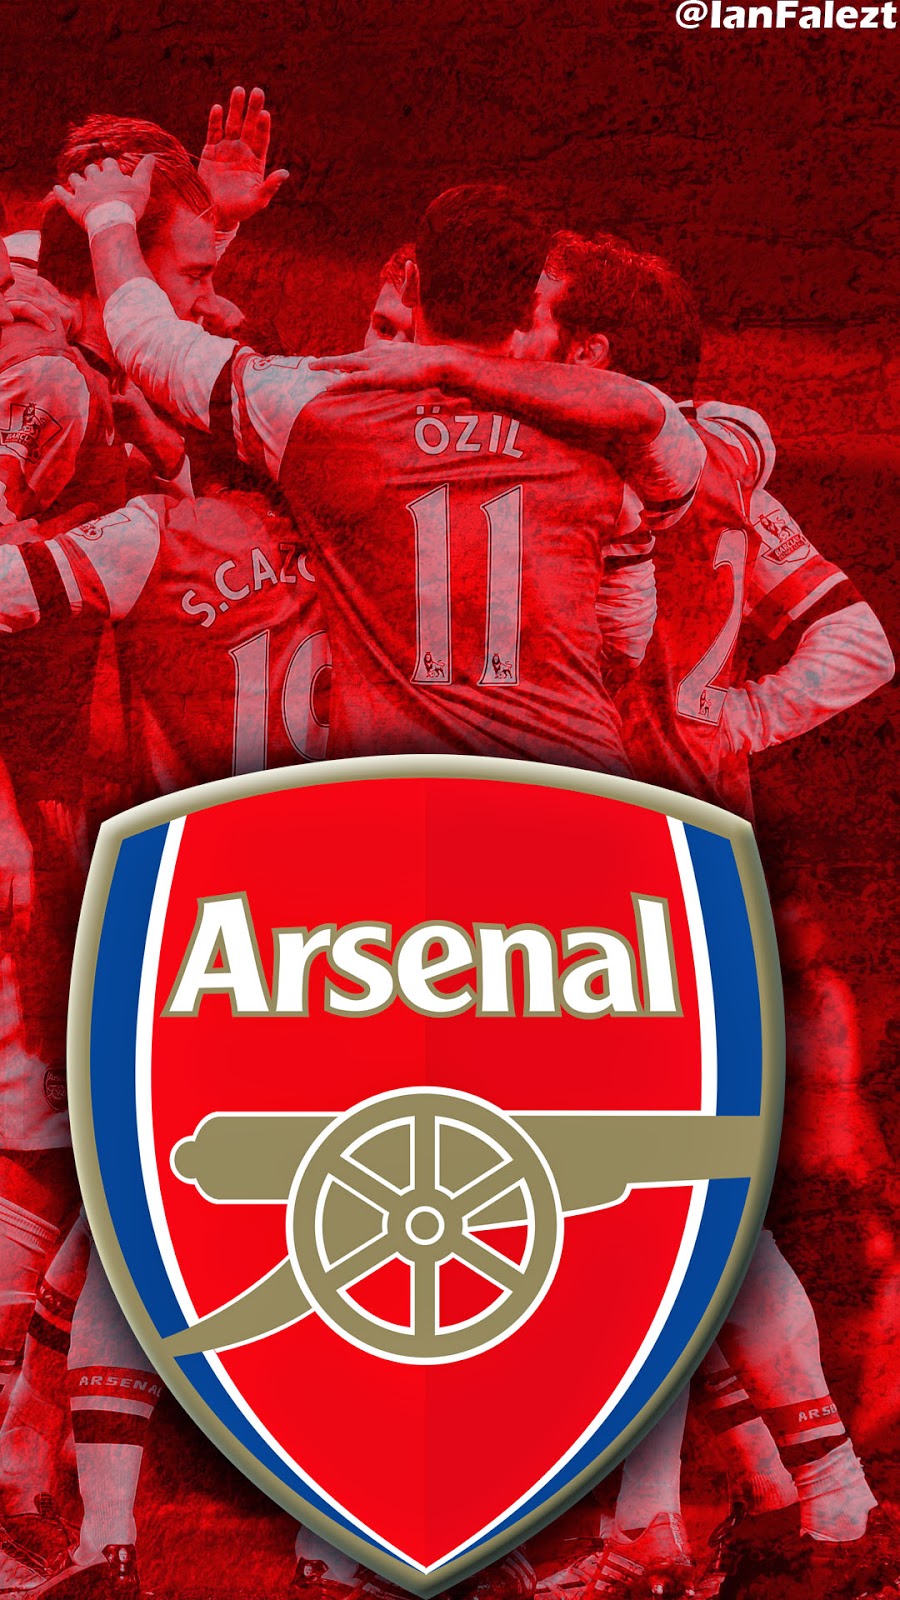 Tải ảnh Arsenal làm hình nền đẹp